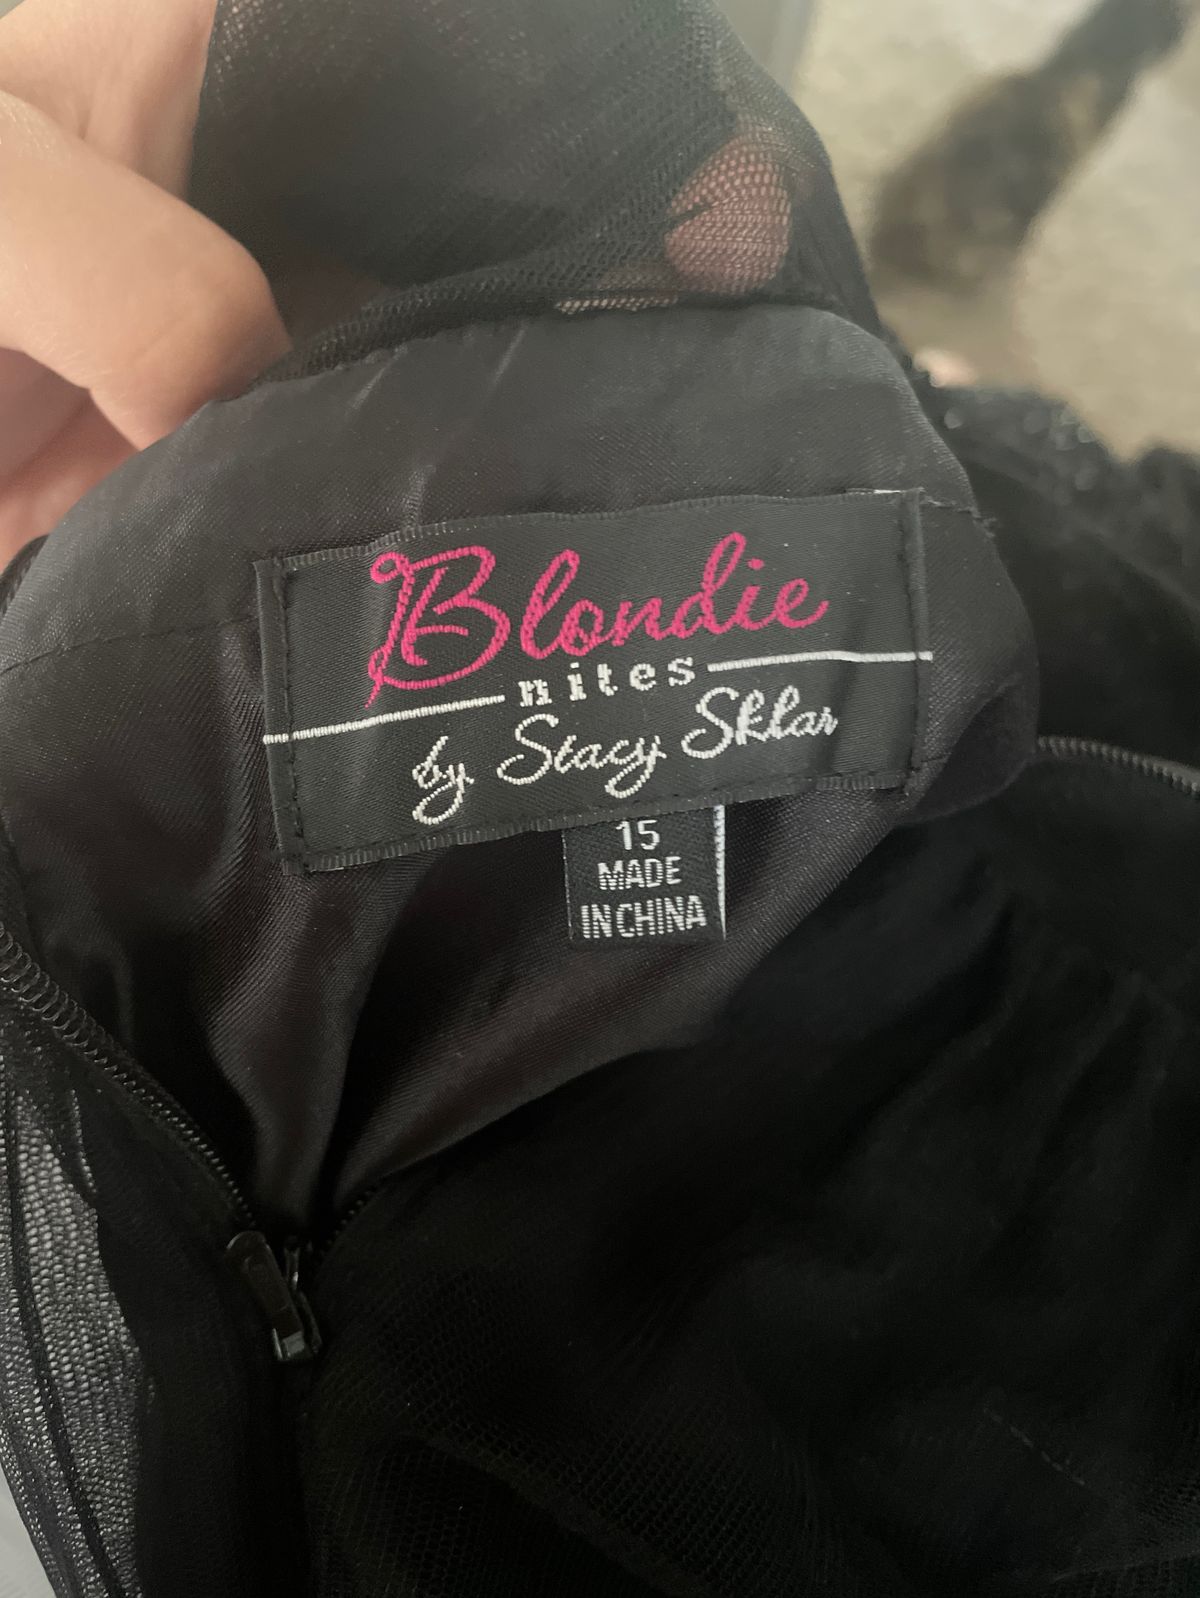 Blondie Nites Plus Size 16 Prom Halter Sheer Black Floor Length Maxi on Queenly